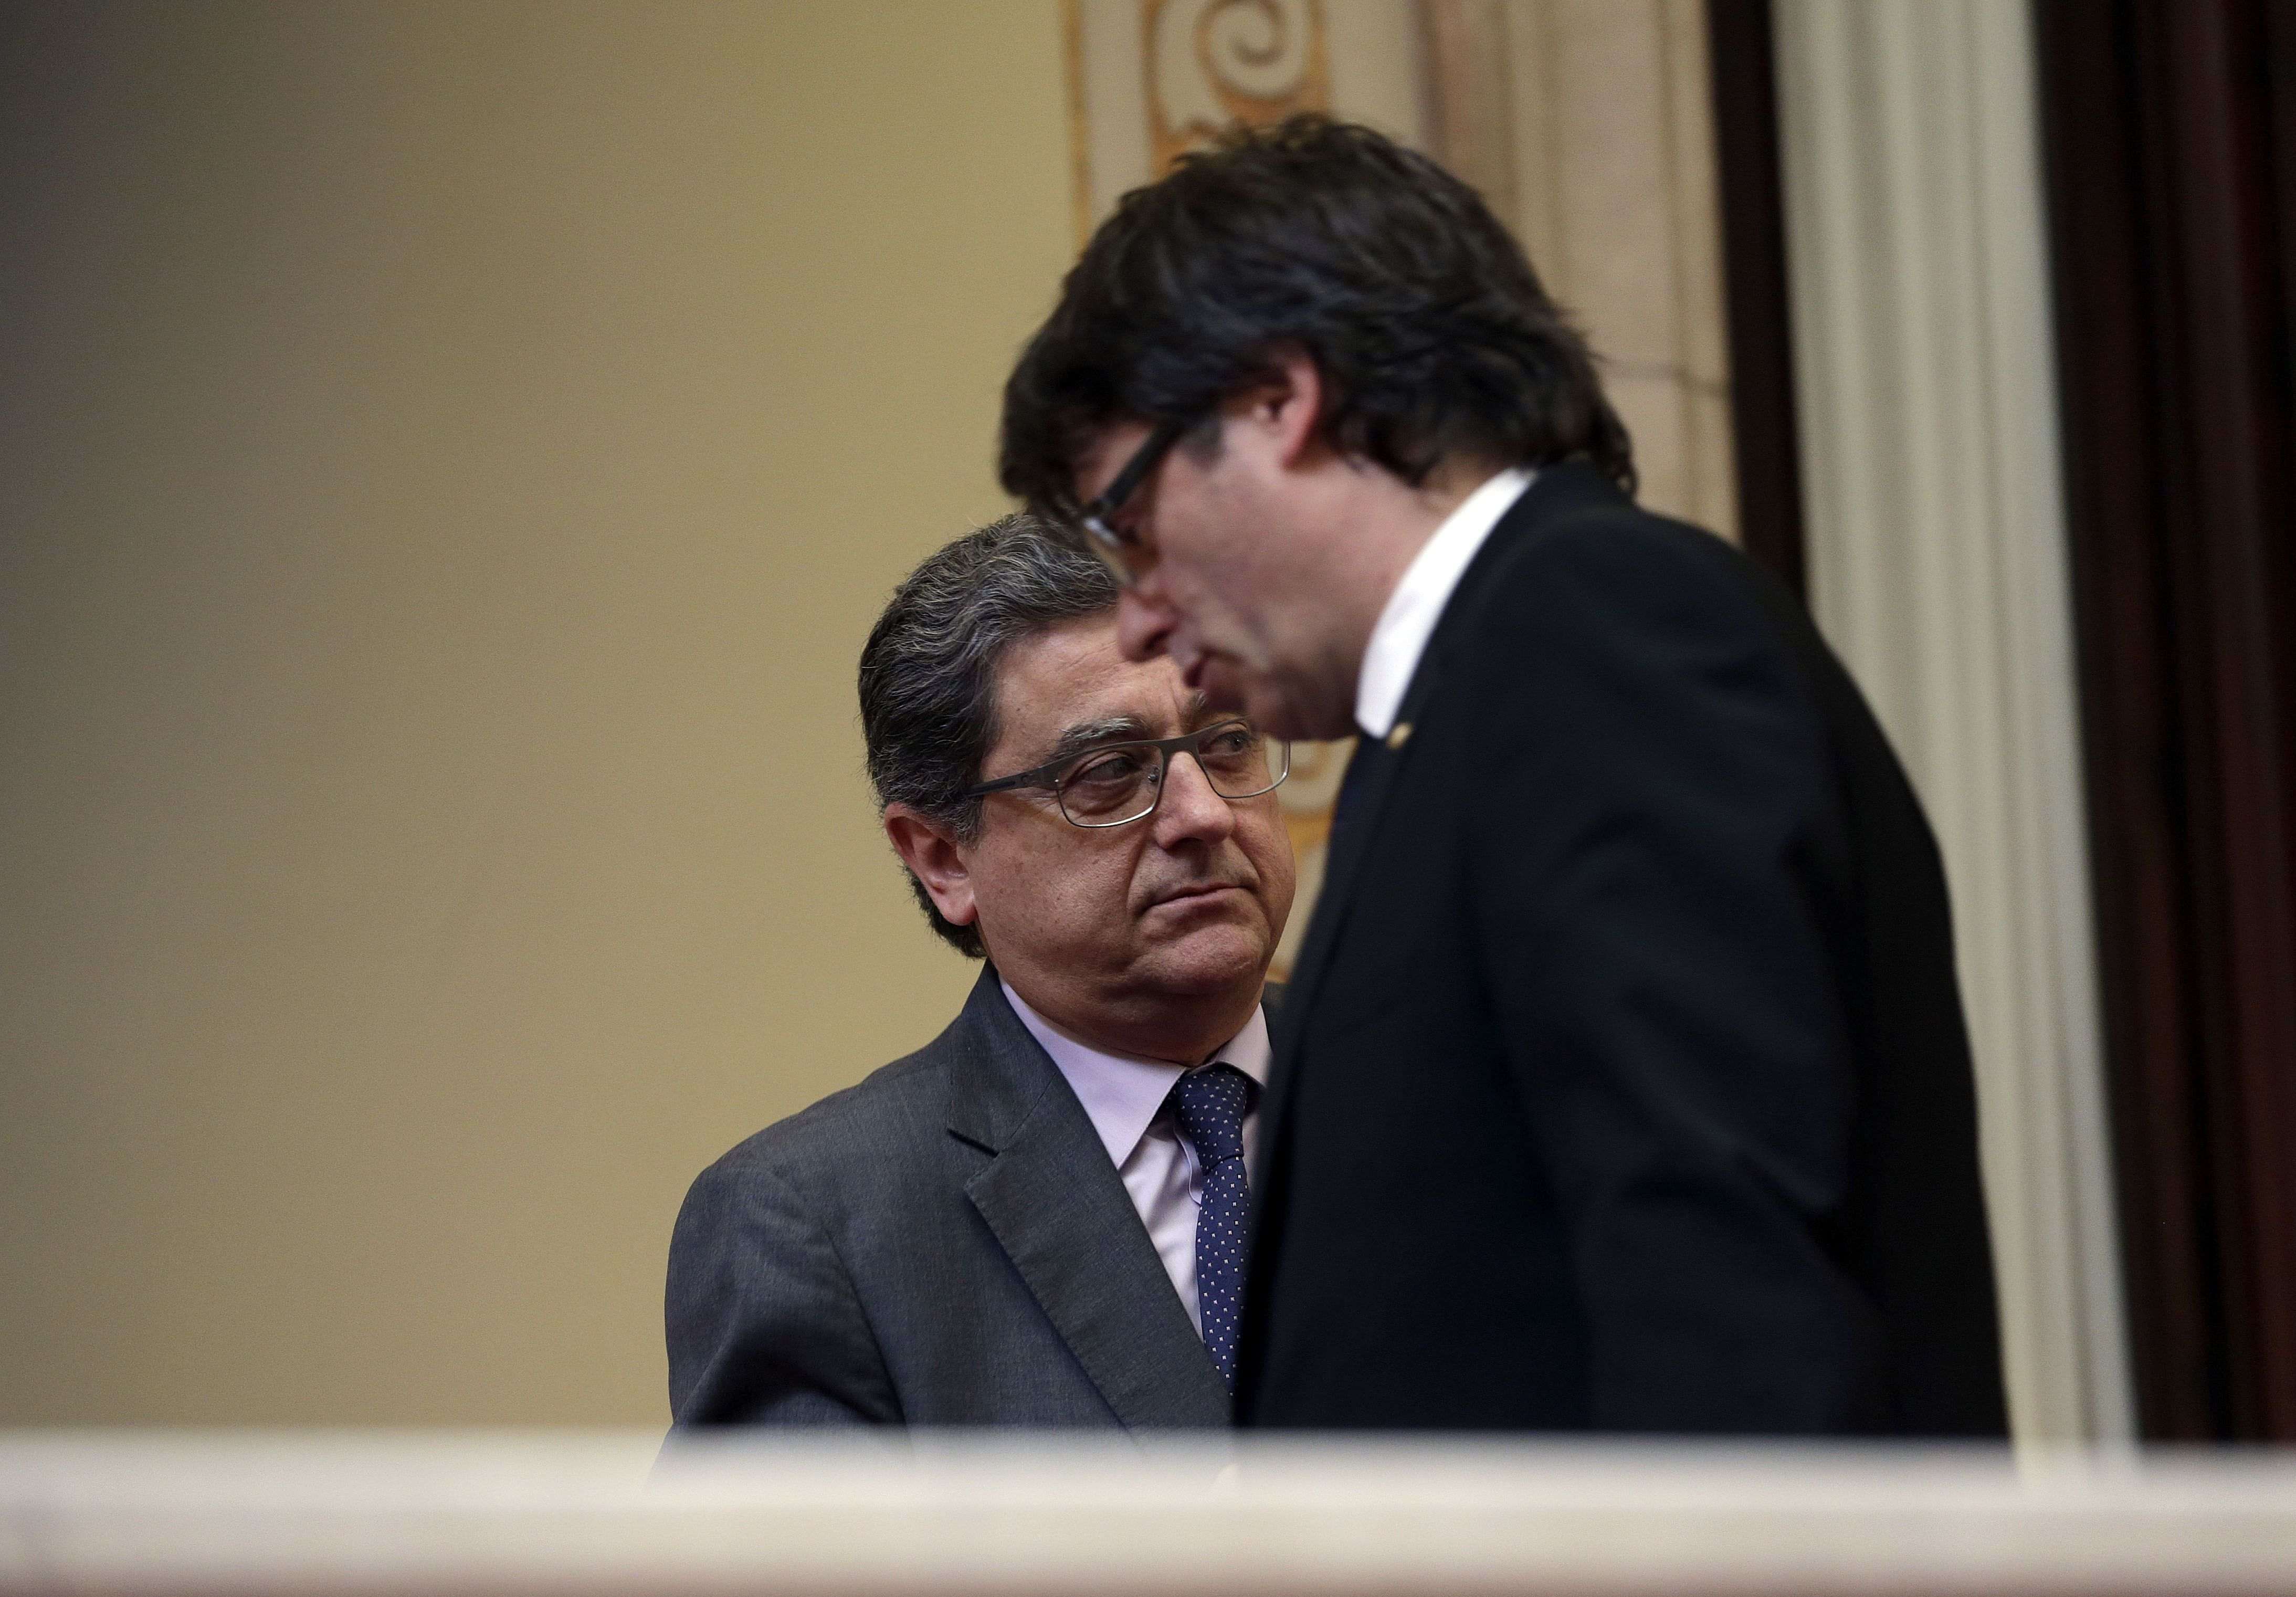 Consultar tot l'Estat: Puigdemont ho insinua, Millo no ho descarta i Rajoy s’hi nega